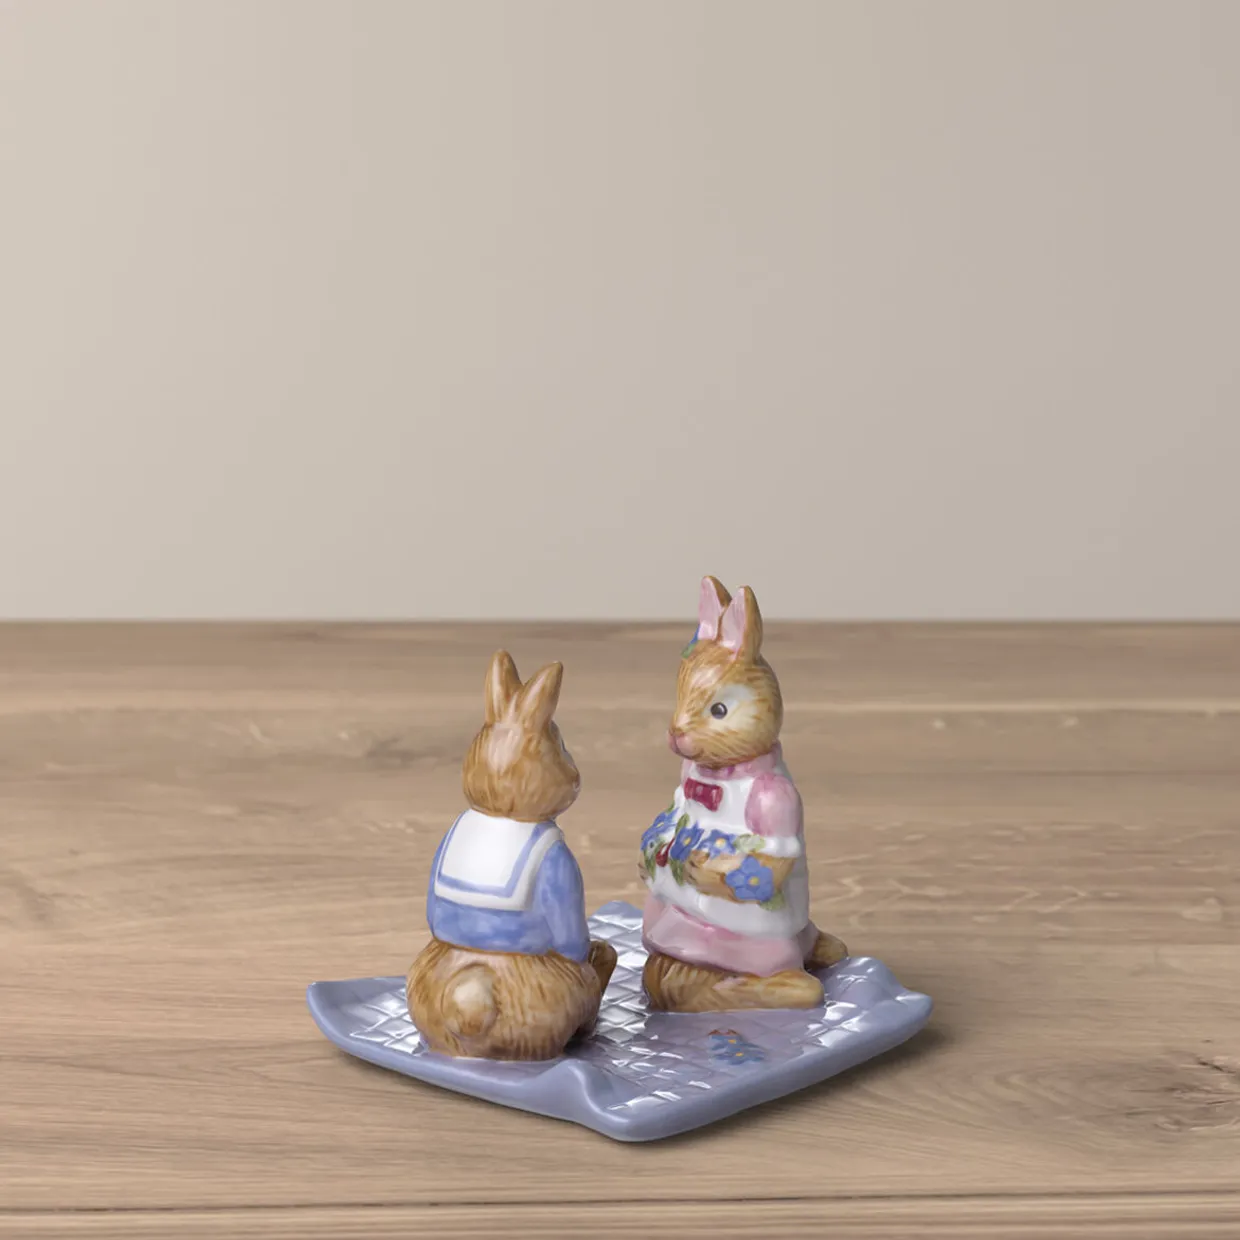 Picknick - Bunny Tales